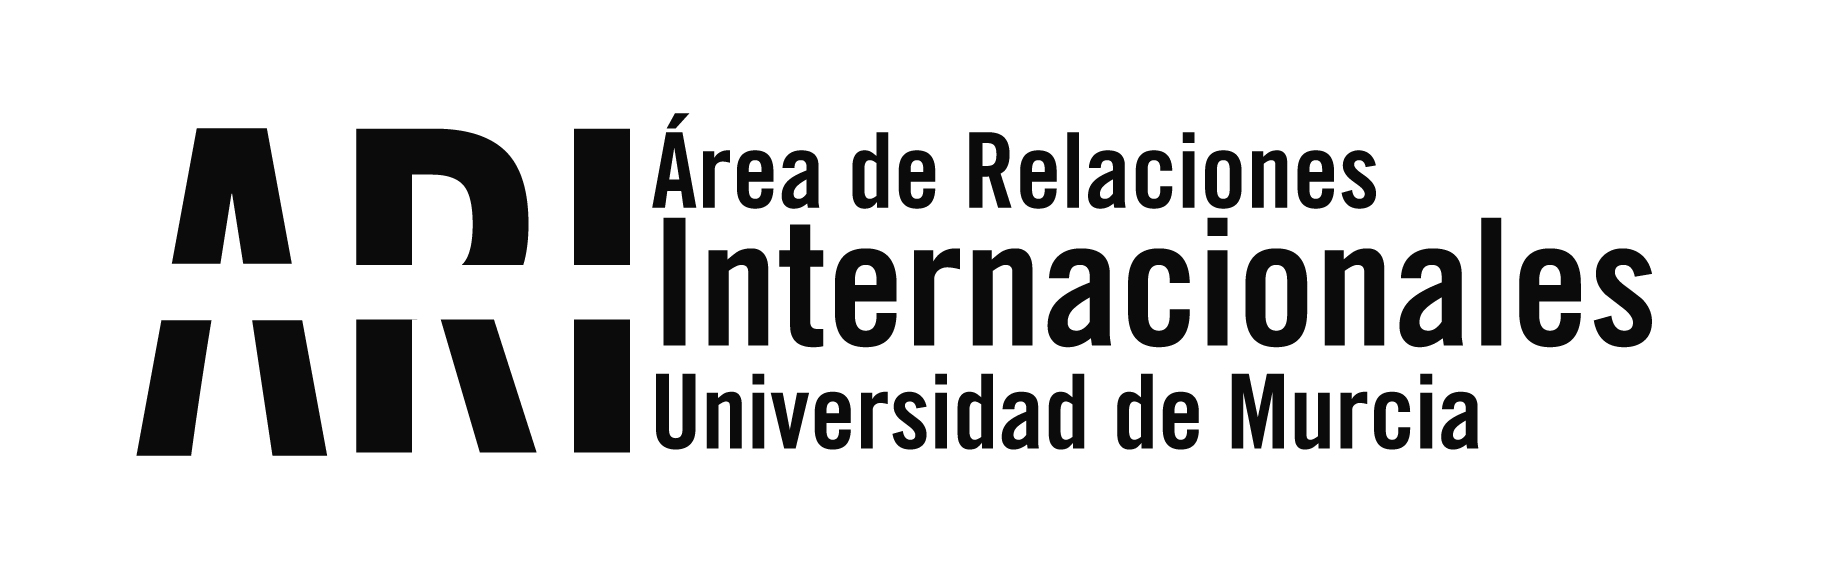 Invitación del Ayuntamiento de Murcia a todos los alumnos internacionales - Área de Relaciones Internacionales